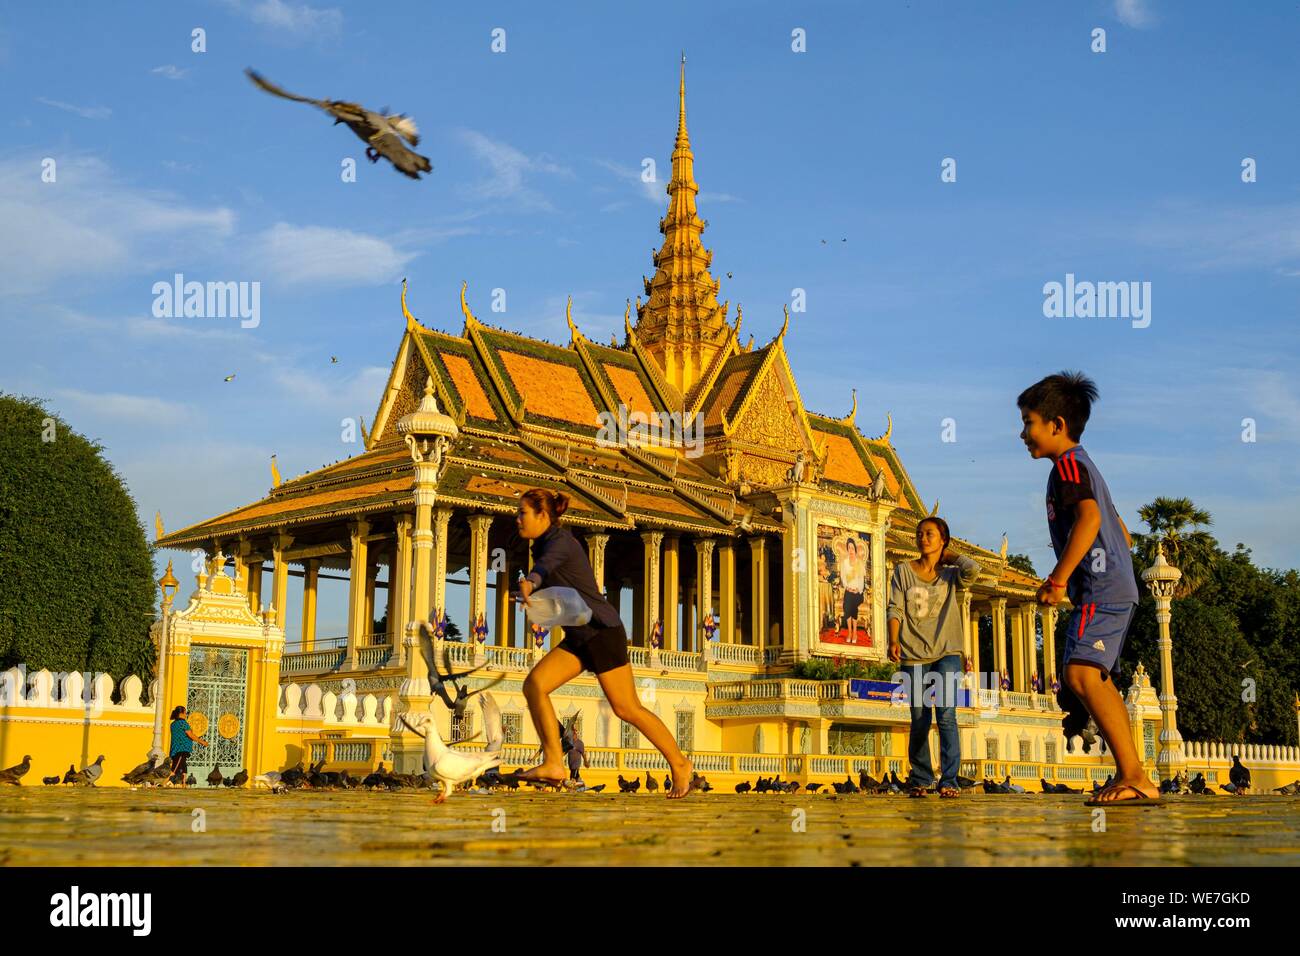 Kambodscha, Phnom Penh, der Königliche Palast, die Residenz des Königs von Kambodscha, im Jahre 1860 gebaut, Kinder spielen mit den Tauben Stockfoto